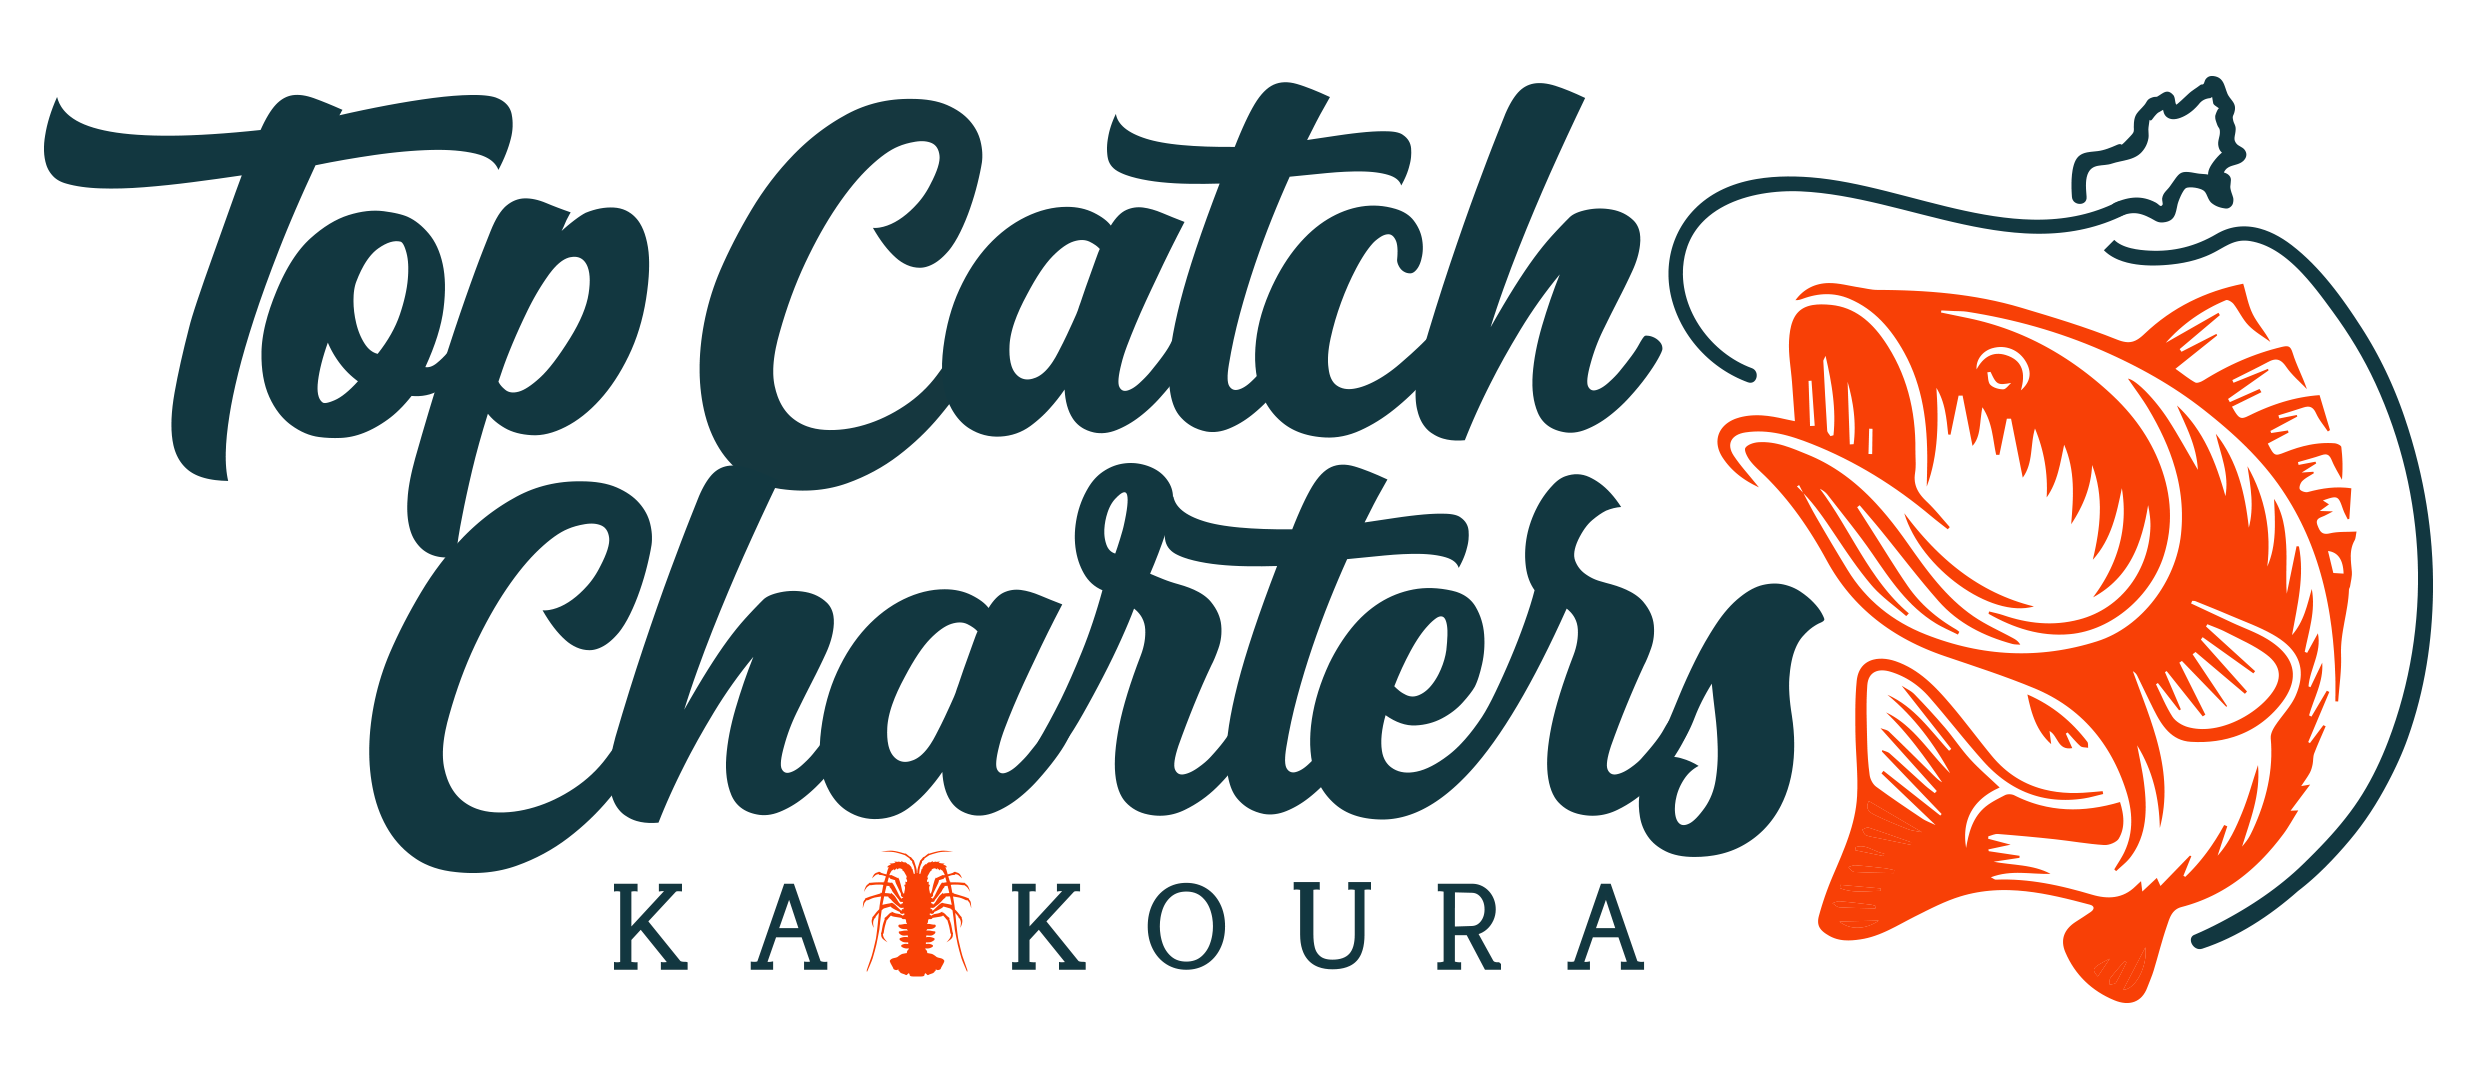 Top Catch Fishing Charters Kaikoura